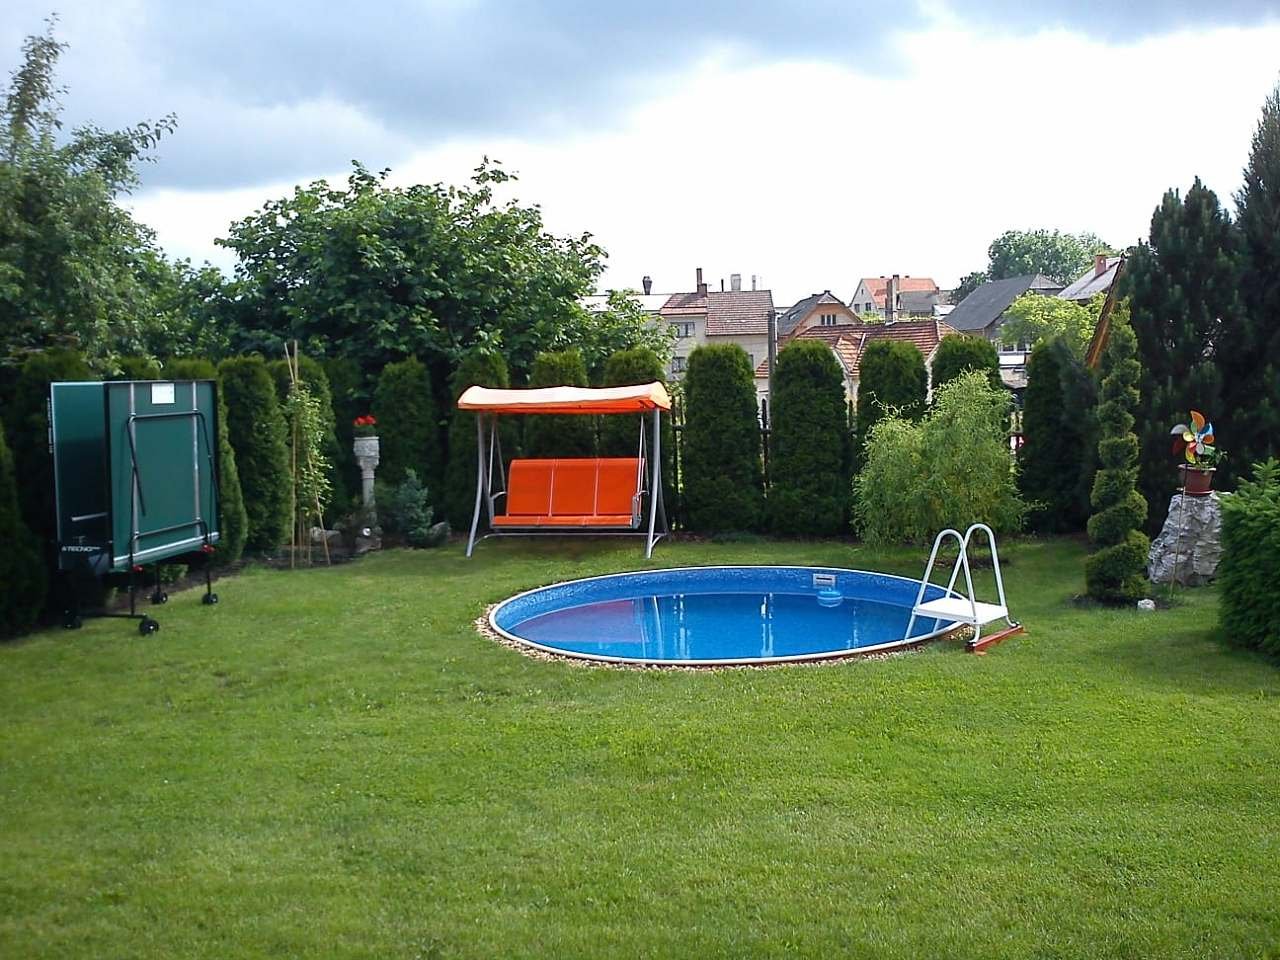 Oplocená zahrada s bazénem a hřištěm